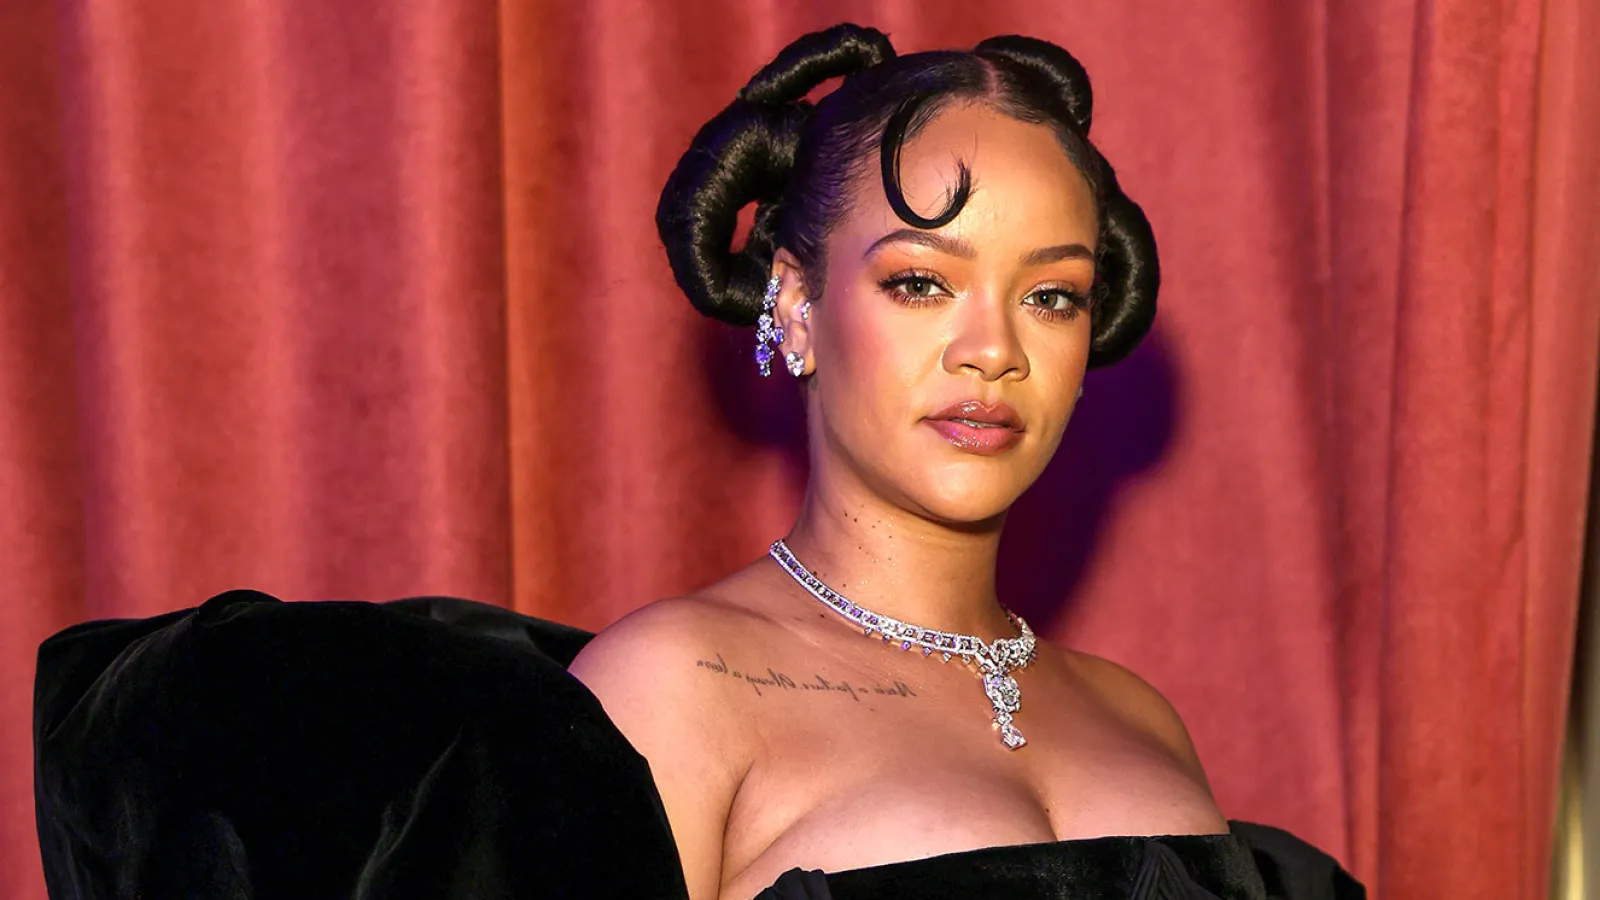 Nënë për herë të parë, Rihanna tregon këshillën më të mirë që ka marrë 